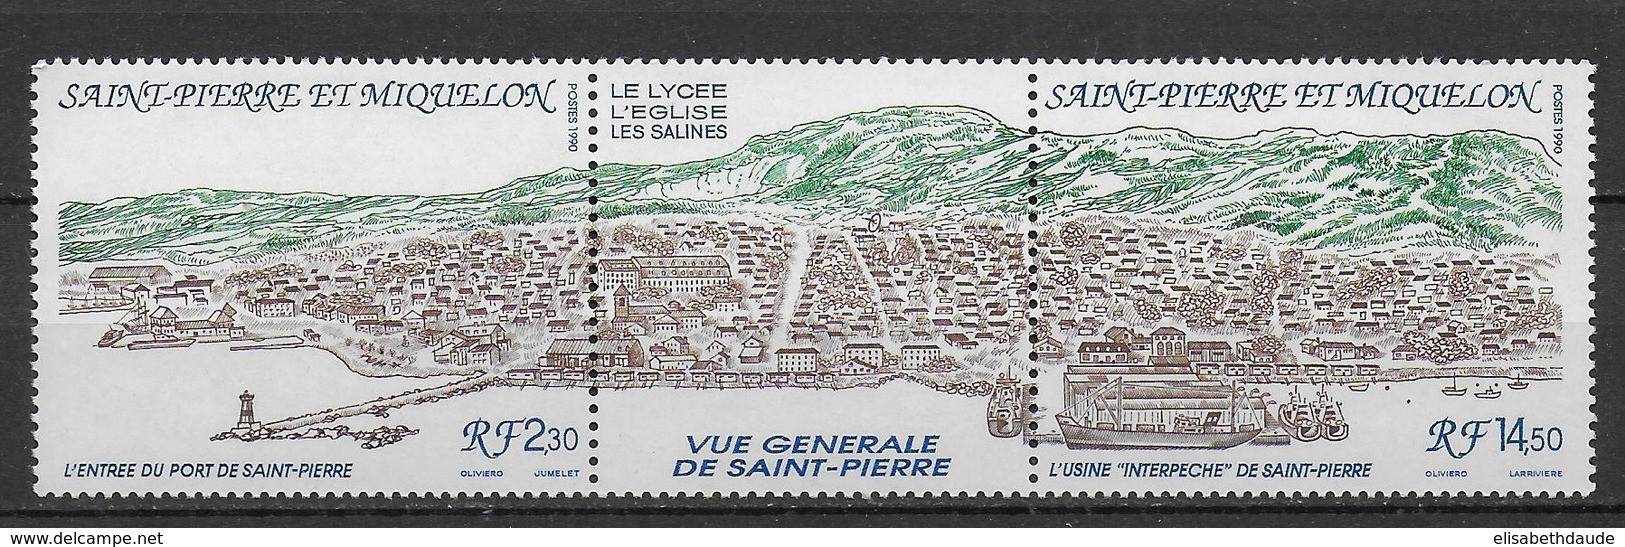 SPM - 1990 - LIVRAISON GRATUITE A PARTIR DE 5 EUR. D'ACHAT - TRIPTYQUE YVERT N°530A **  MNH - - Unused Stamps